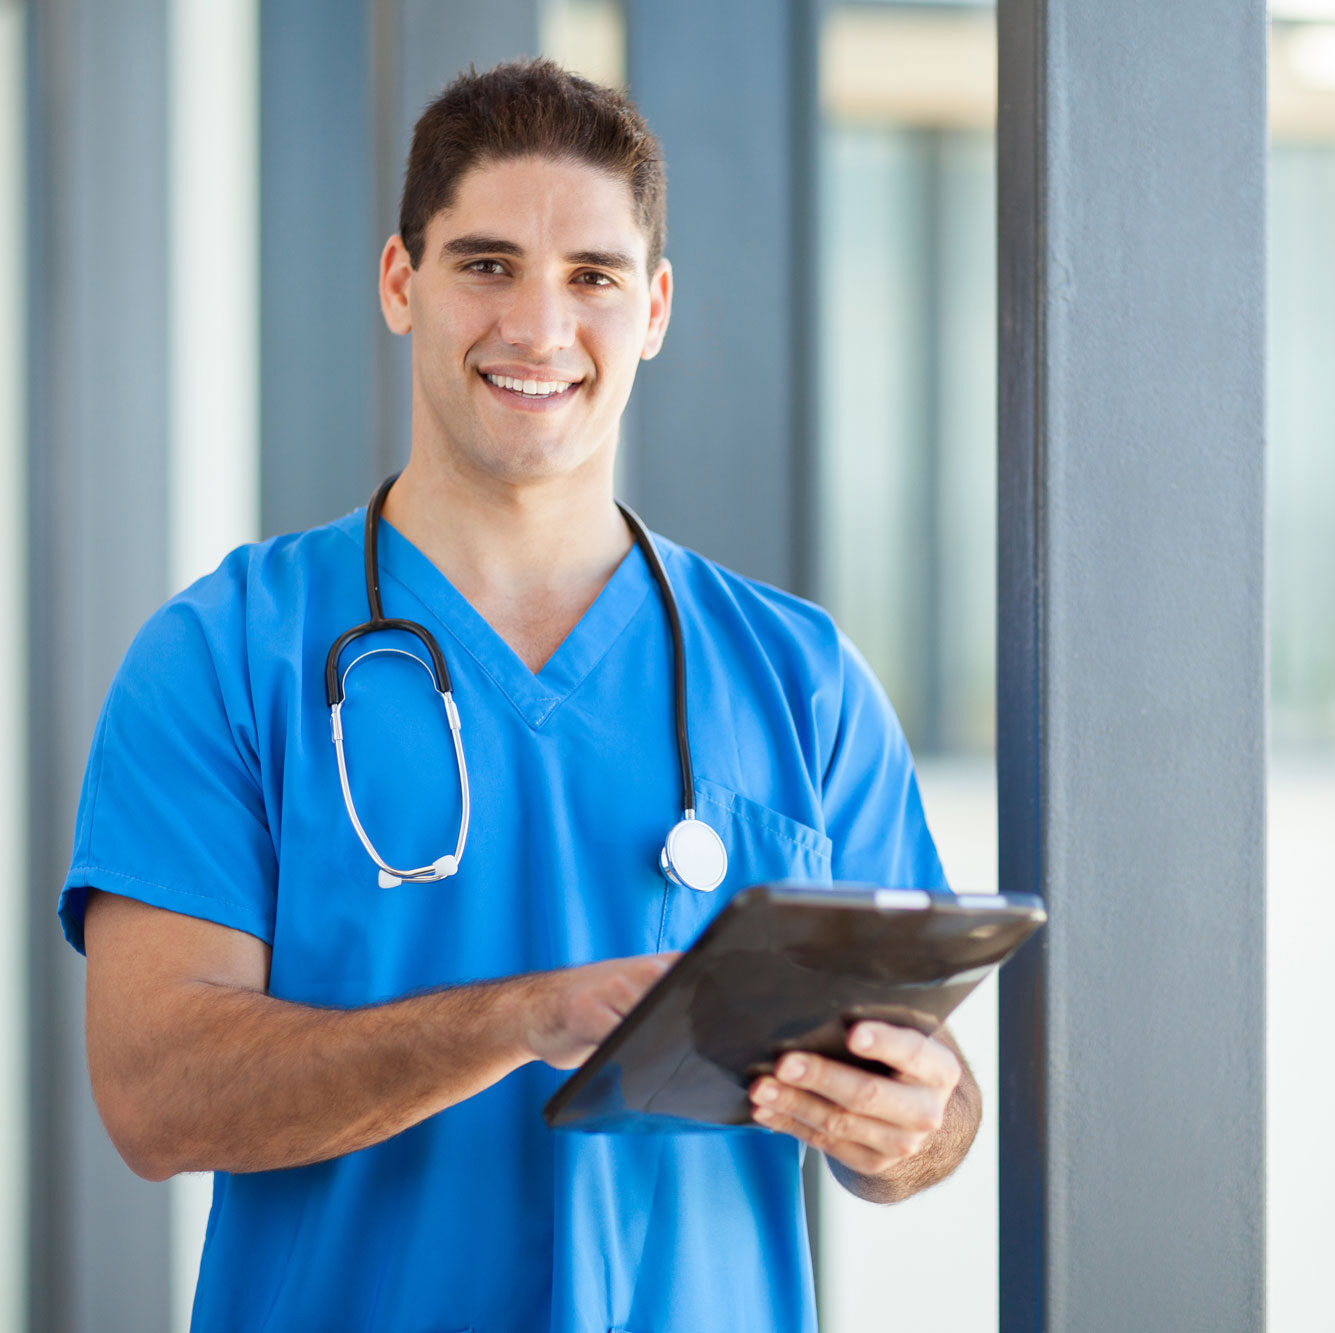 Patient Care / Multi-Skilled Technician - Larock Healthcare Academy - Healthcare Career Training